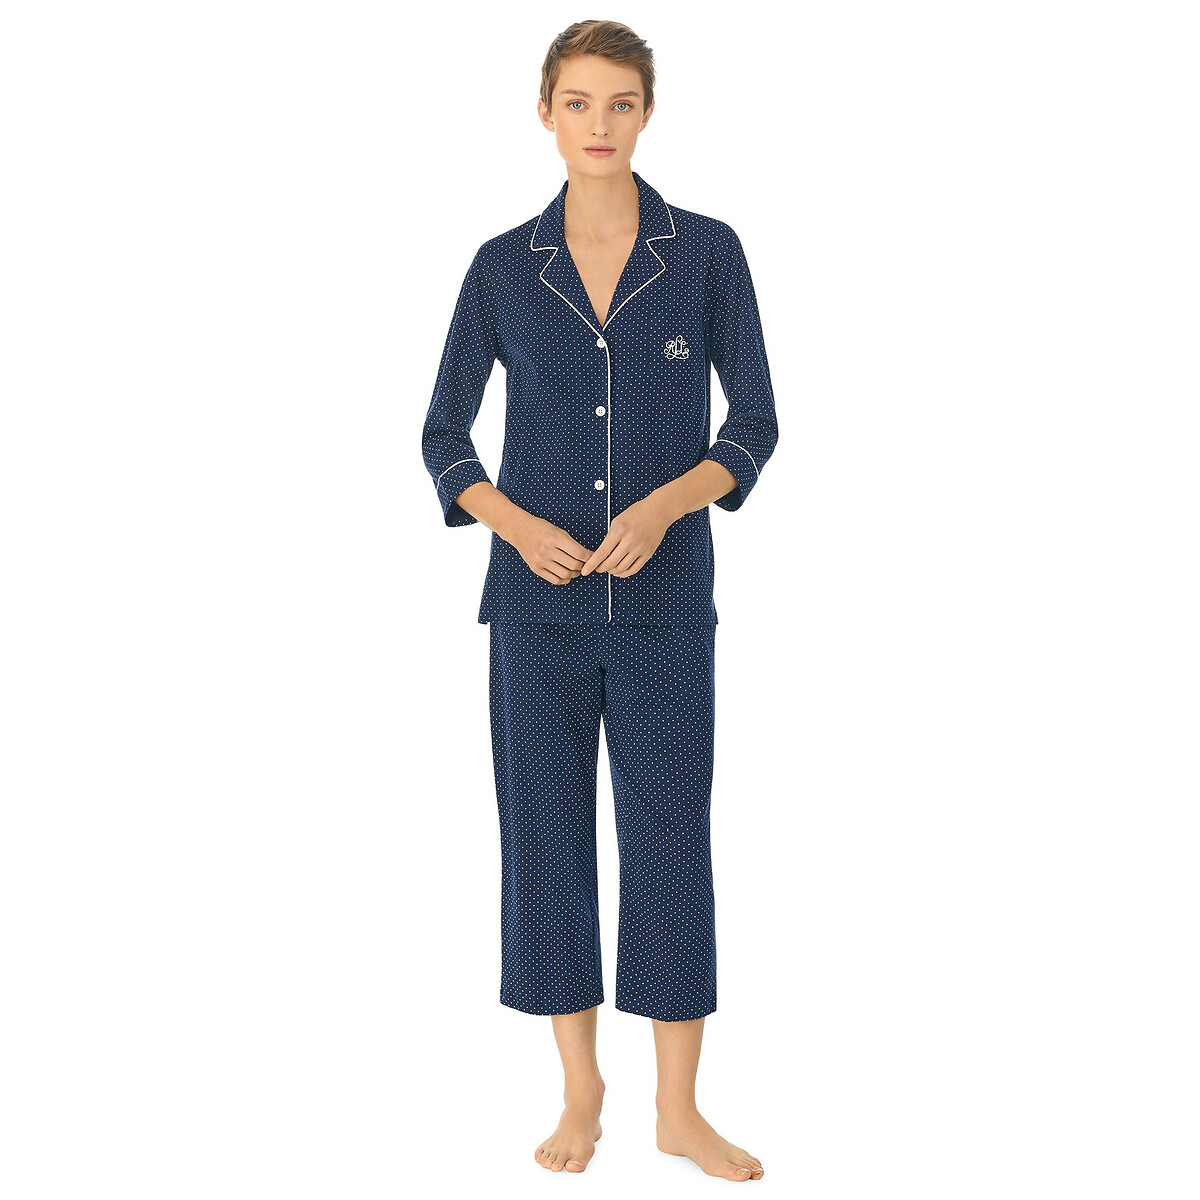 Image of Polka Dot Cotton Pyjamas with 3/4 Length Sleeves